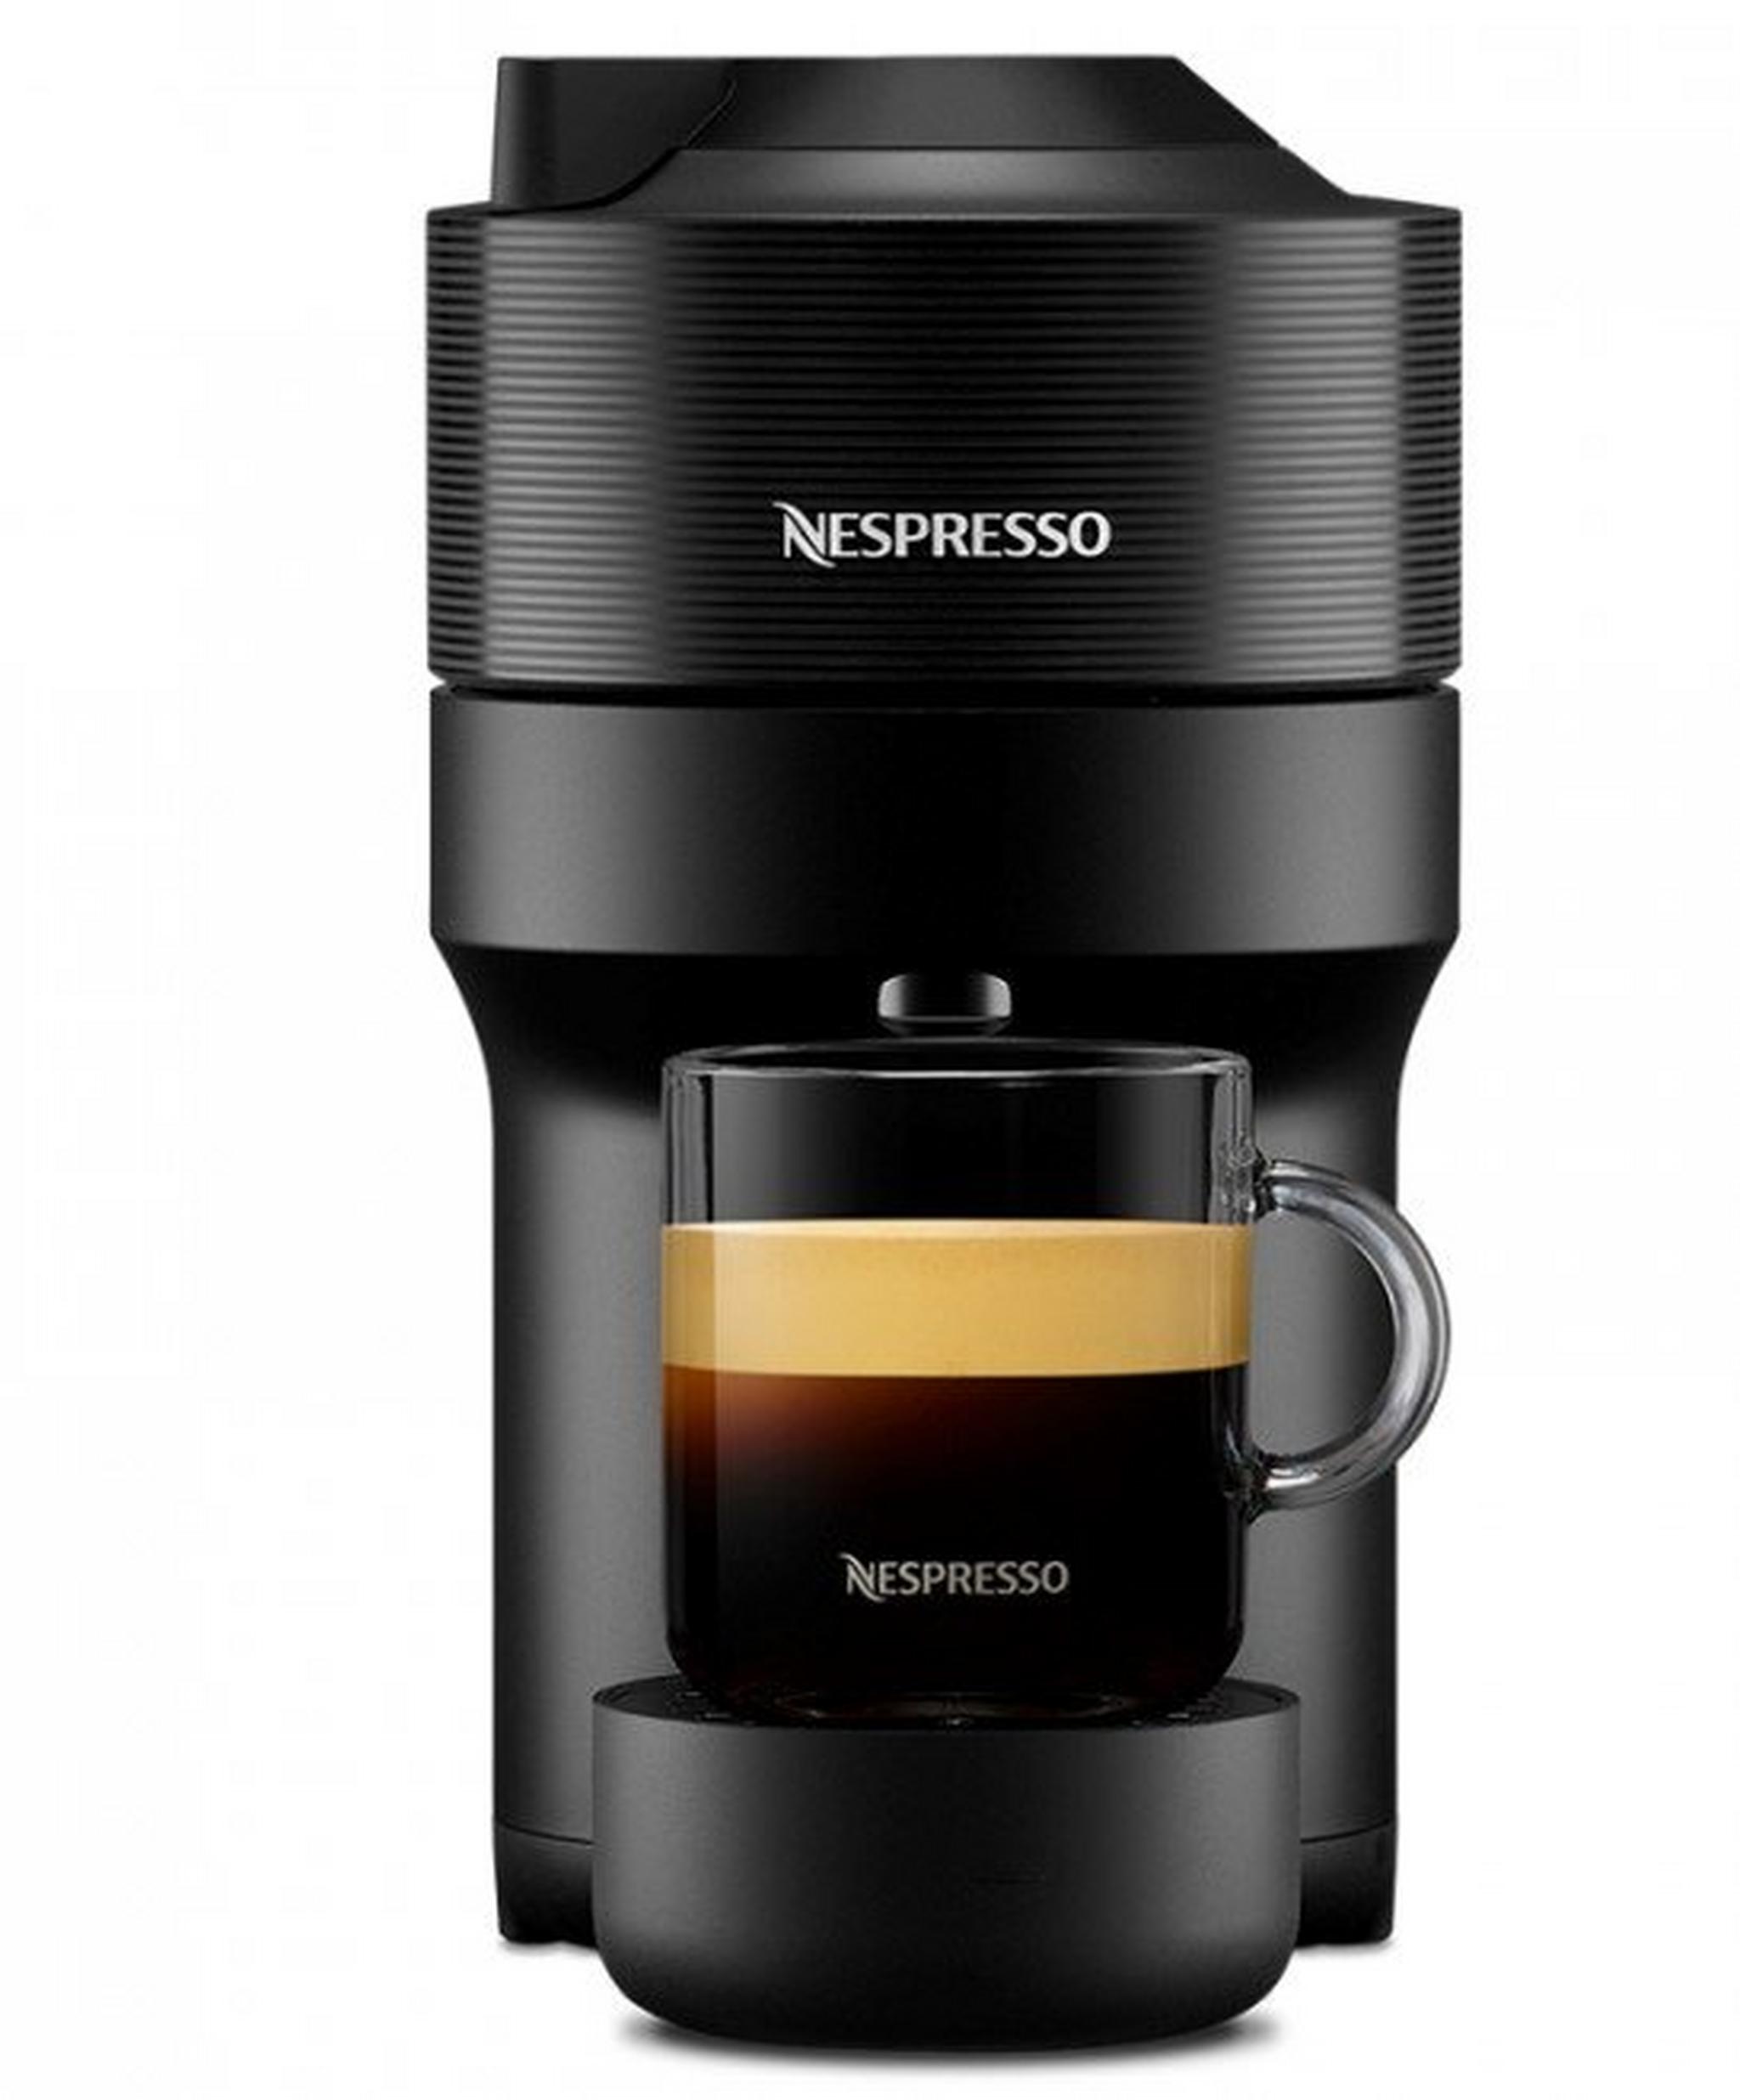 ماكينة تحضير القهوة فيرتو بوب من نسبريسو، قدرة 1260 واط، سعة 0.6 لتر، GDV2-GB-BK-NE - أسود